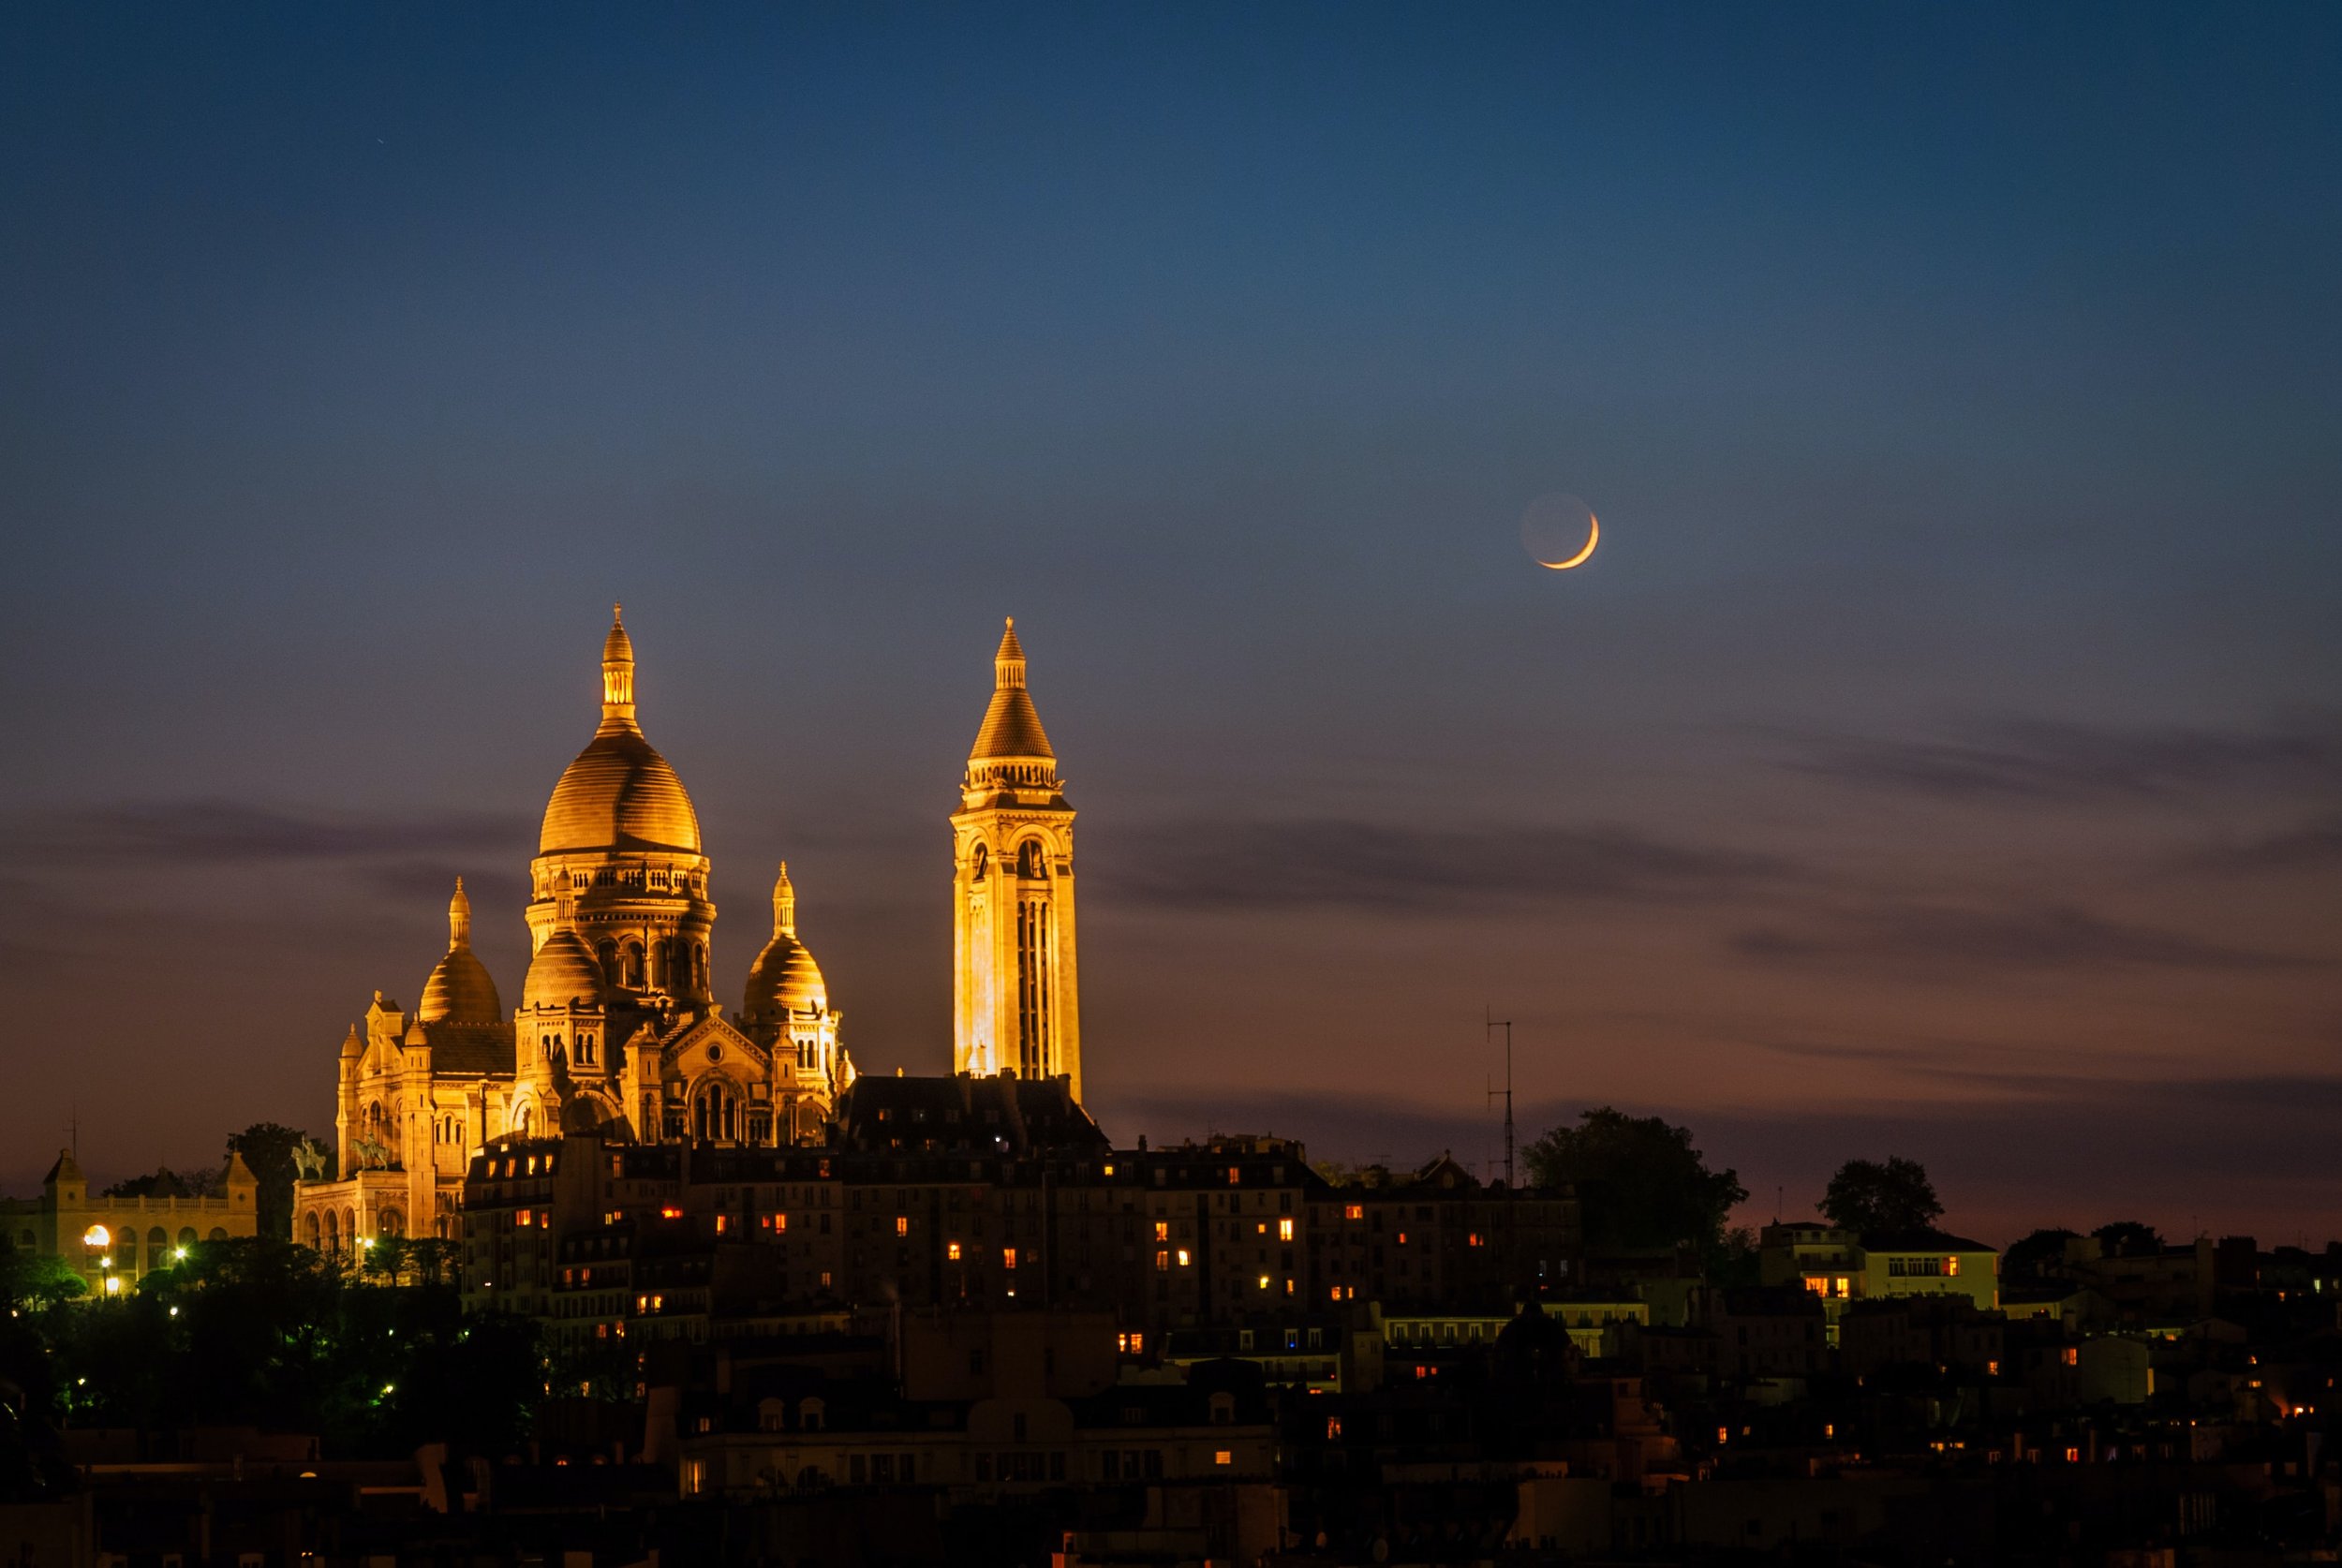 Montmartre and the Sacré-Coeur